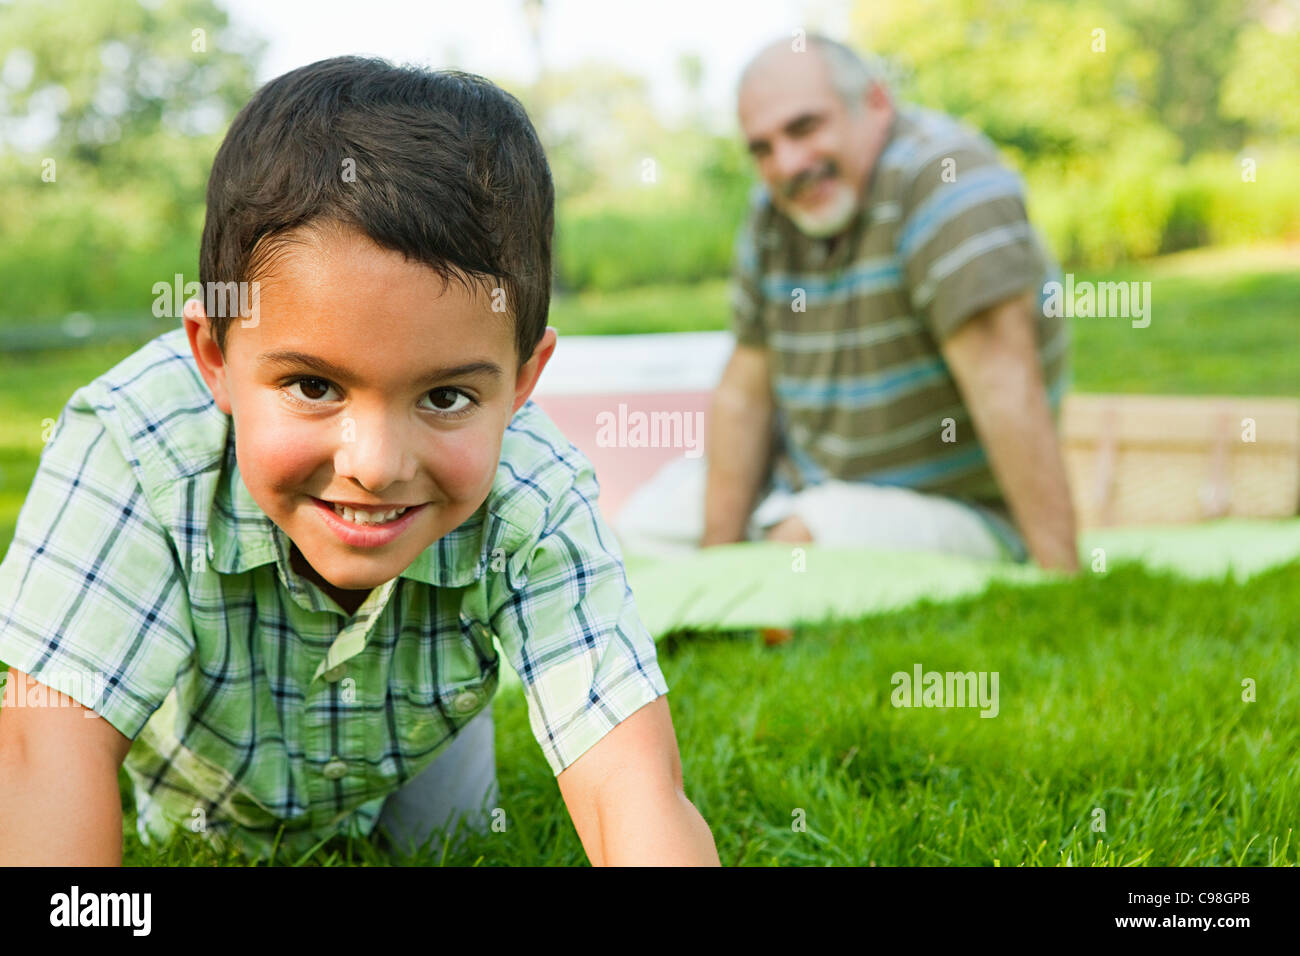 Grandson smiling park, portrait Stock Photo